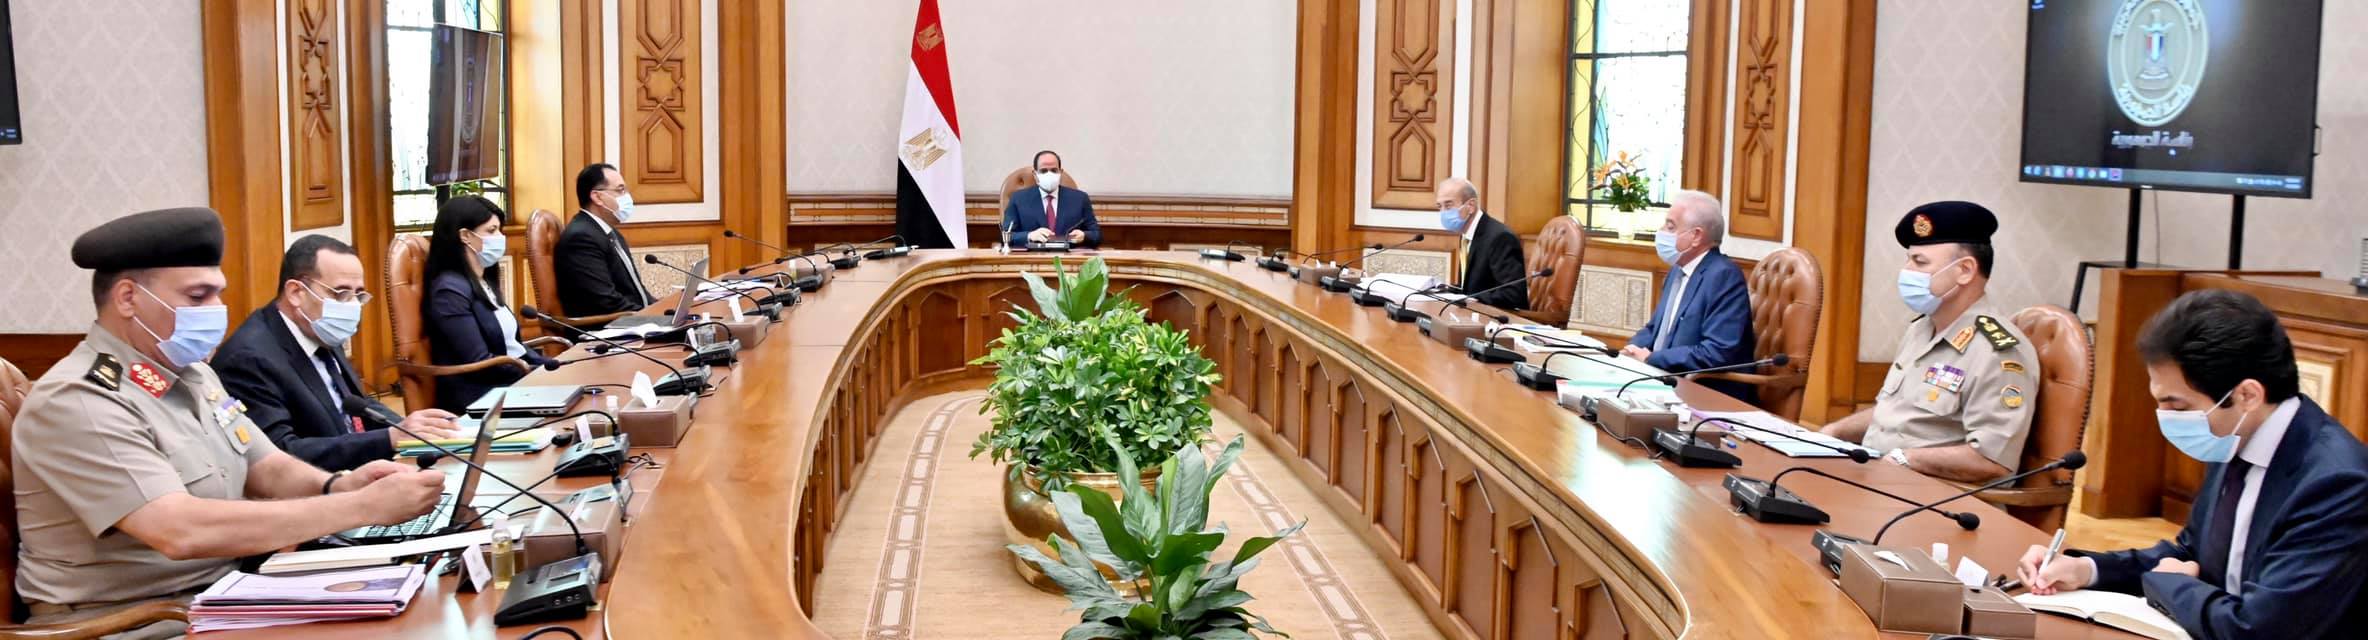   الرئيس السيسى يوجه بإقامة حوار مجتمعى فى المناطق المستهدفة بمشروعات سيناء